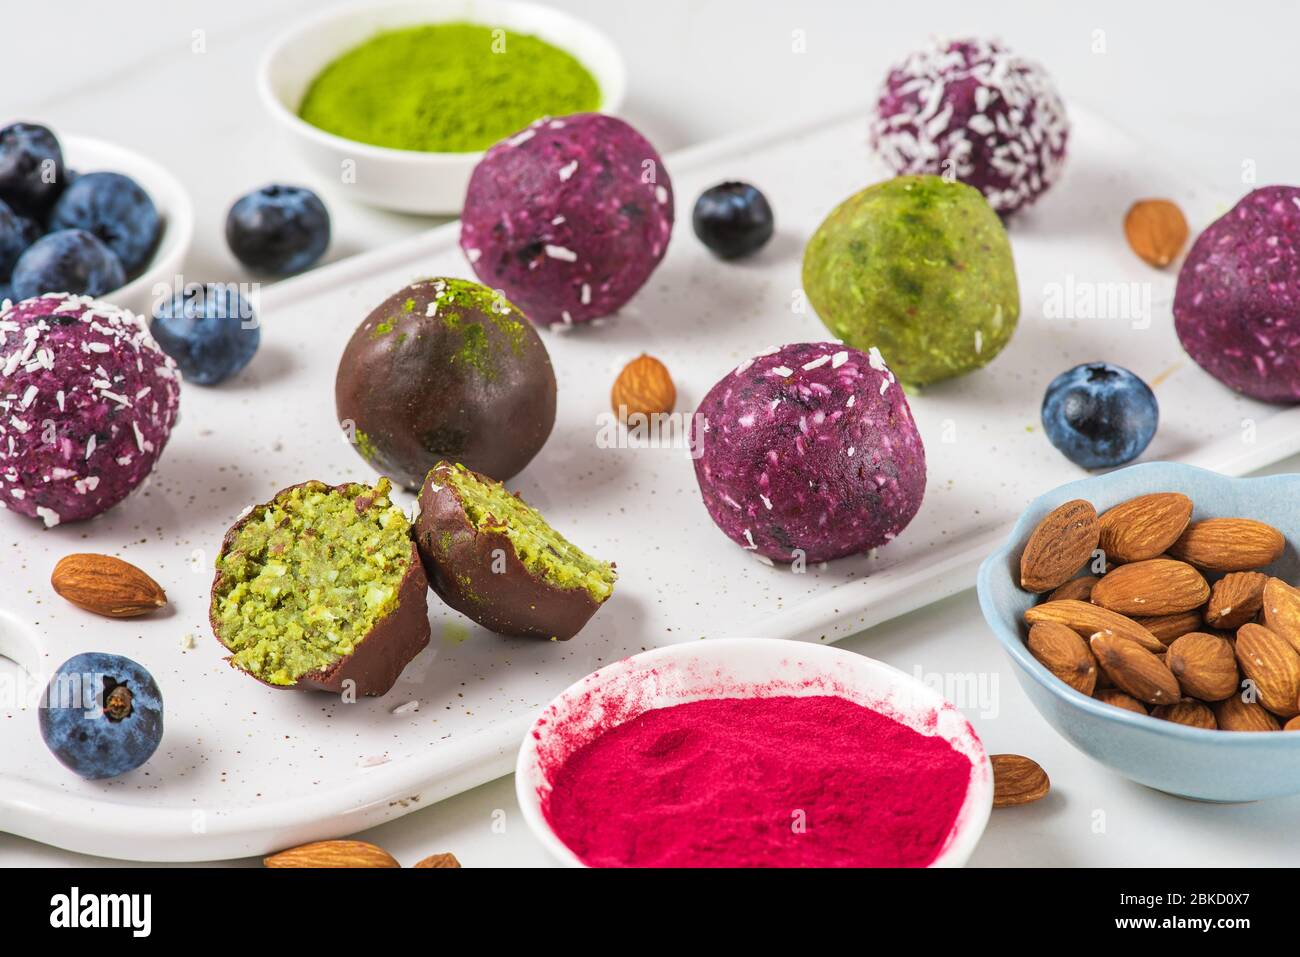 Morsures énergétiques faites d'acai, de matcha, de noix, de dattes et de baies avec des boules d'énergie dans le glaçage coloré au chocolat. Dessert végétalien sain Banque D'Images